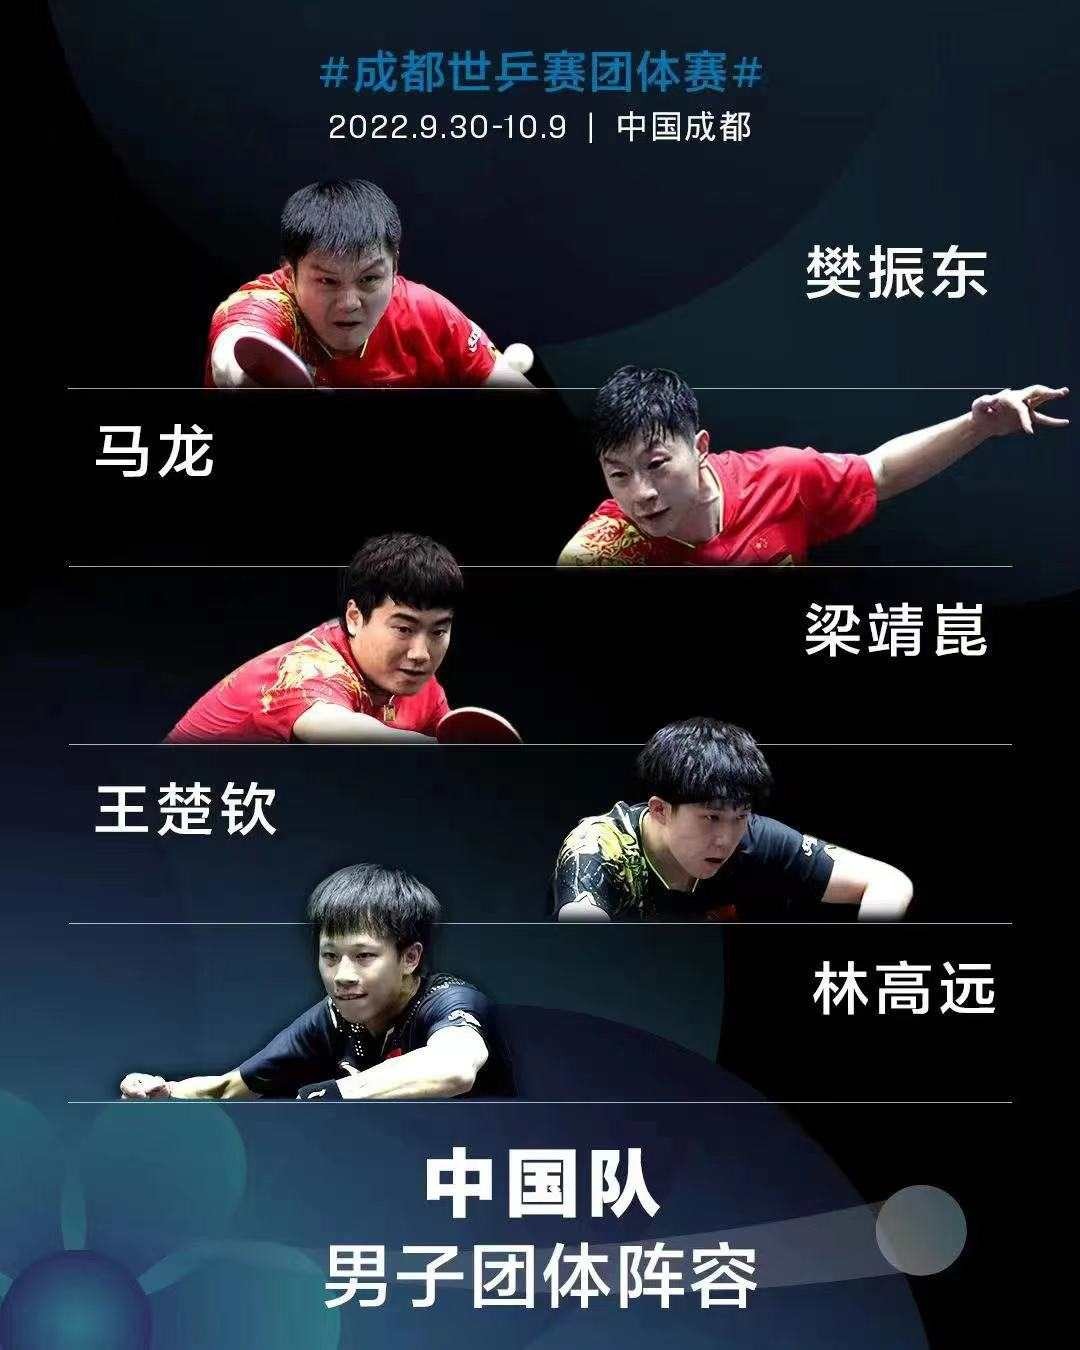 世乒赛团体赛中国男团获胜晋级8强_新体育网